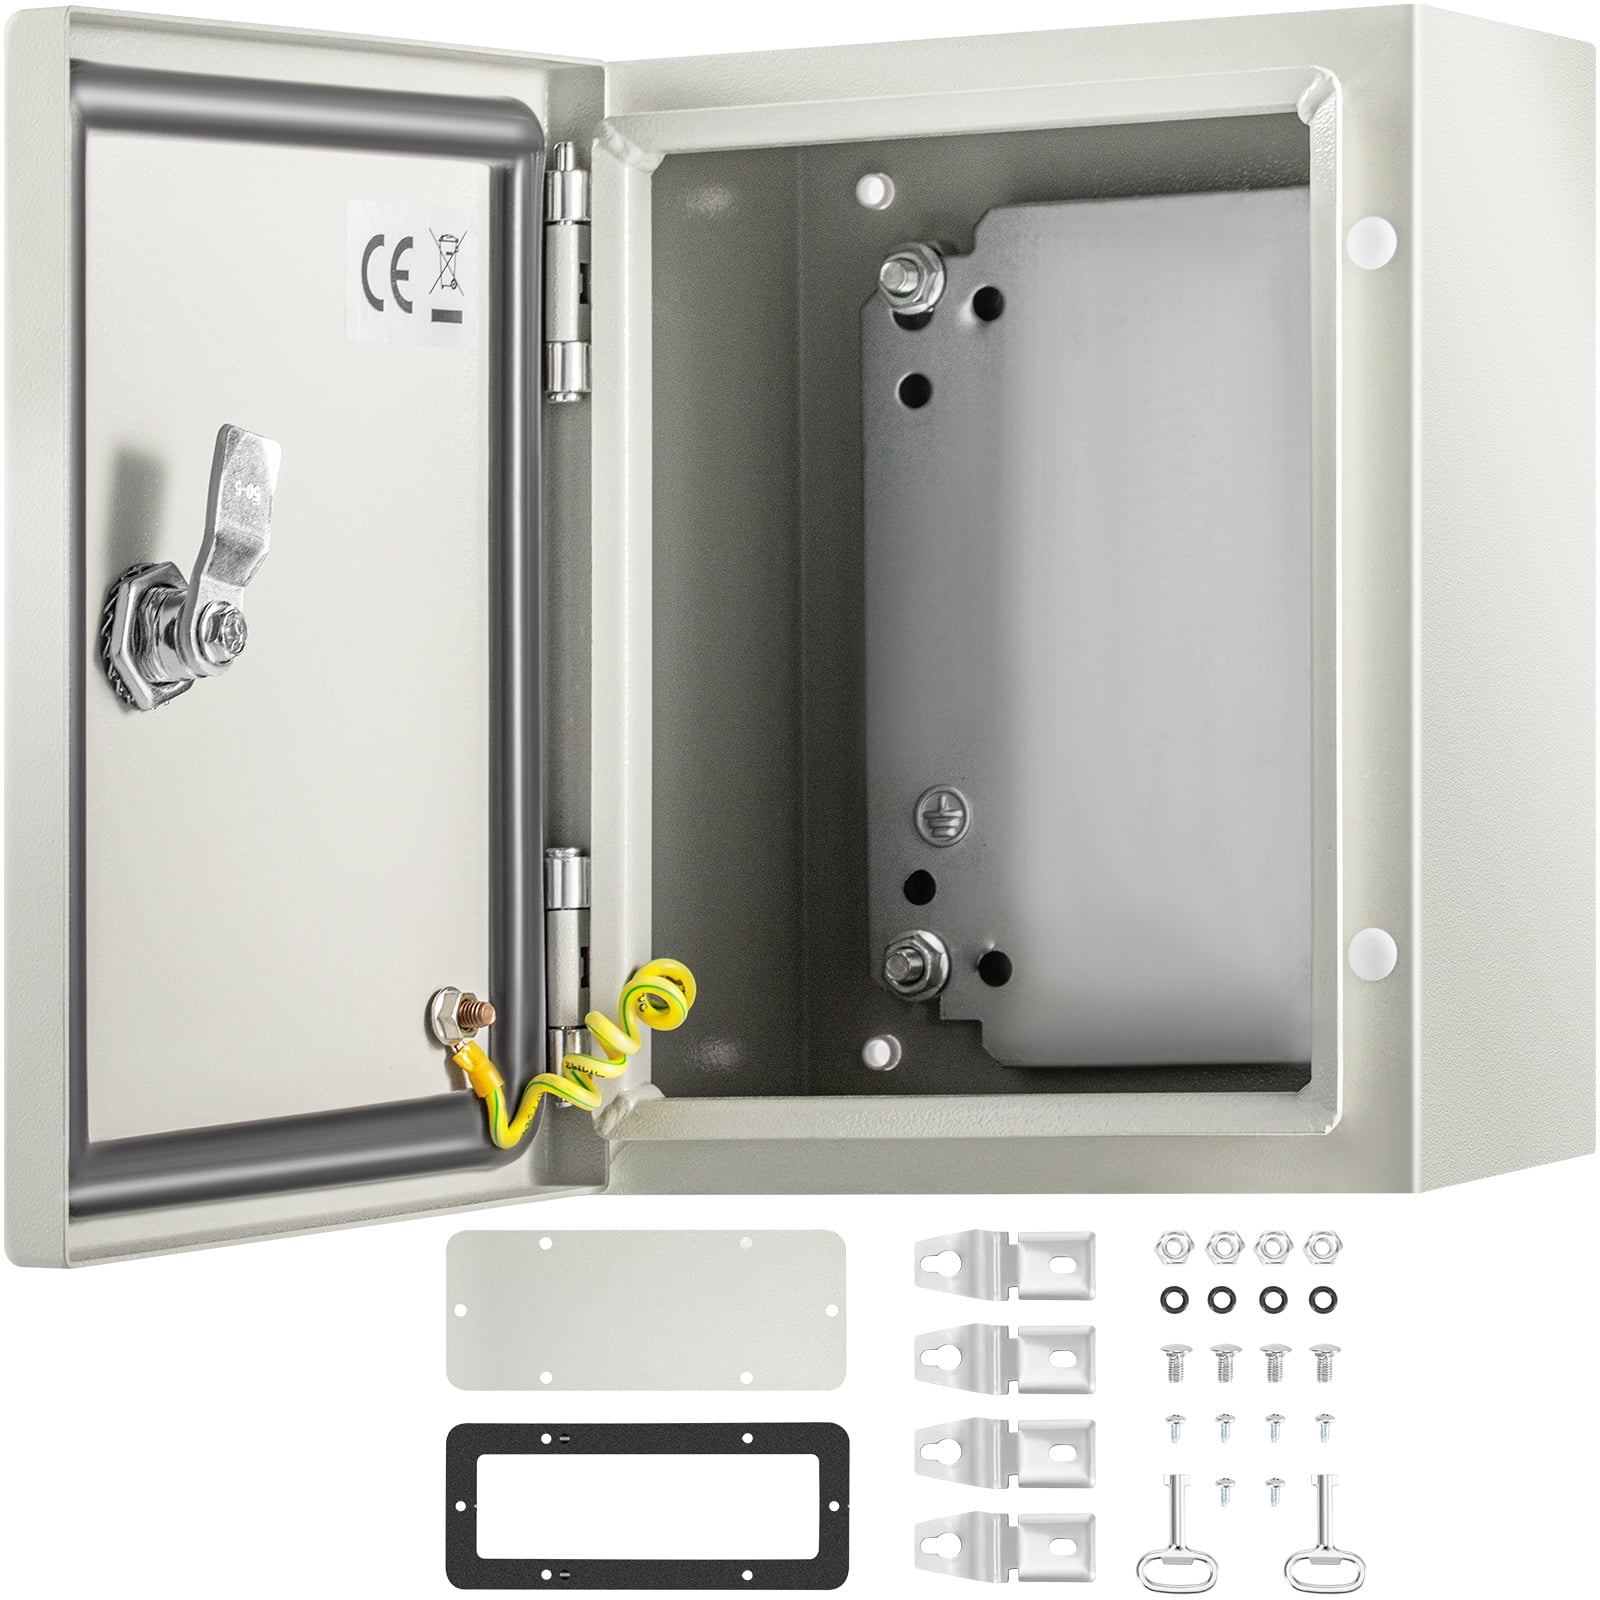 IP65 weatherproof,waterproof enclosures,adaptable outdoor box,cabinet 7 sizes 